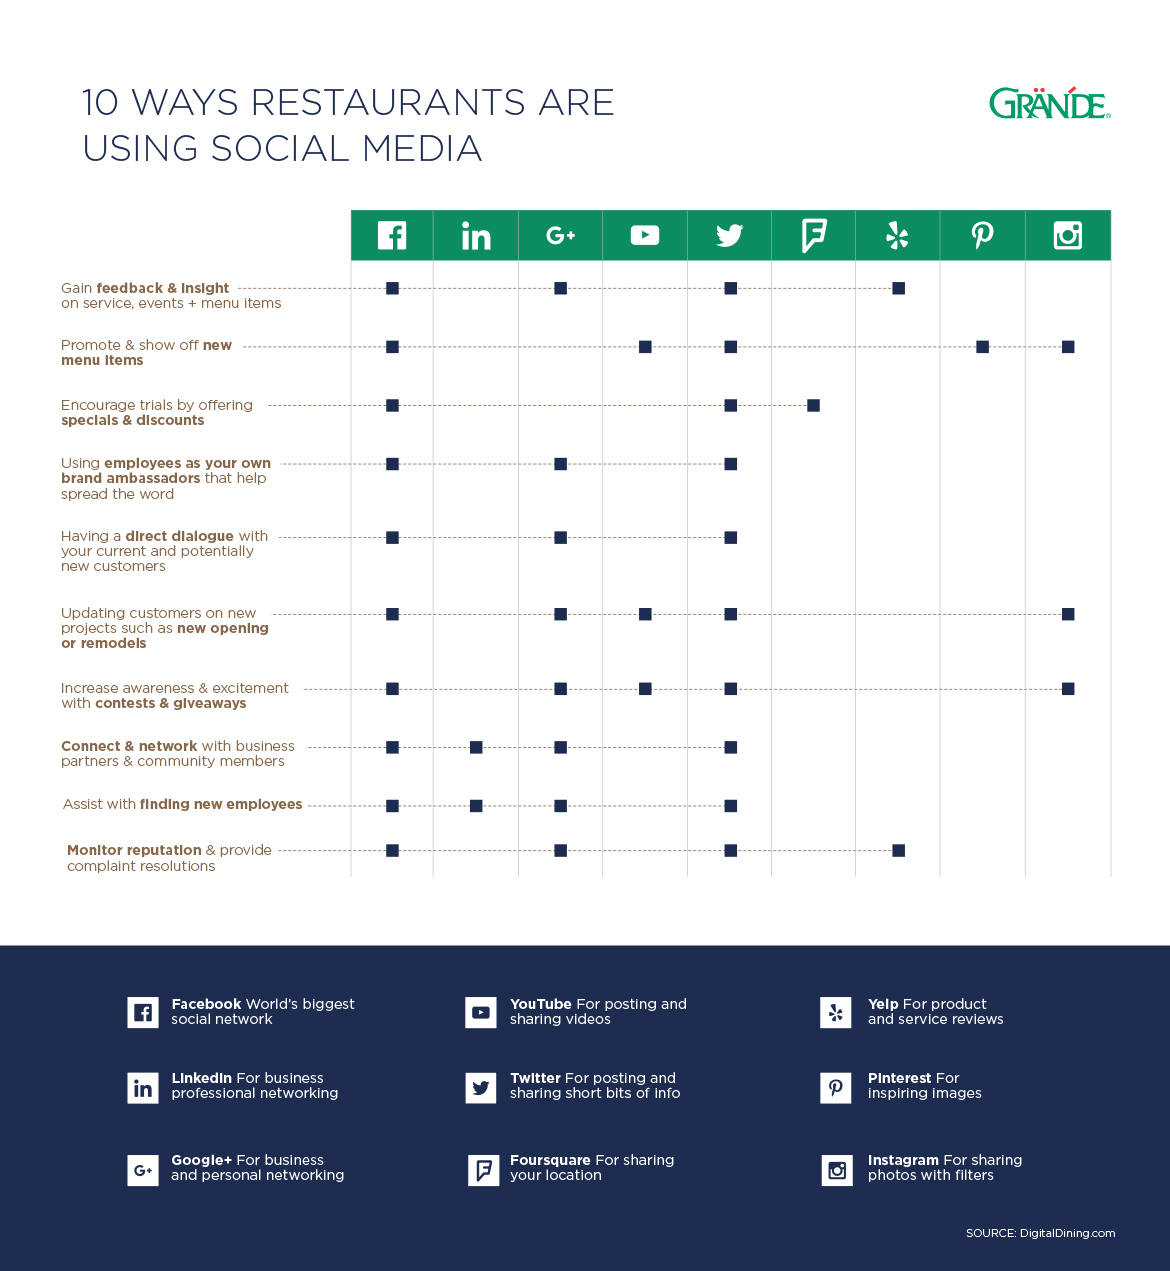 10 Ways Restaurants are Using Social Media